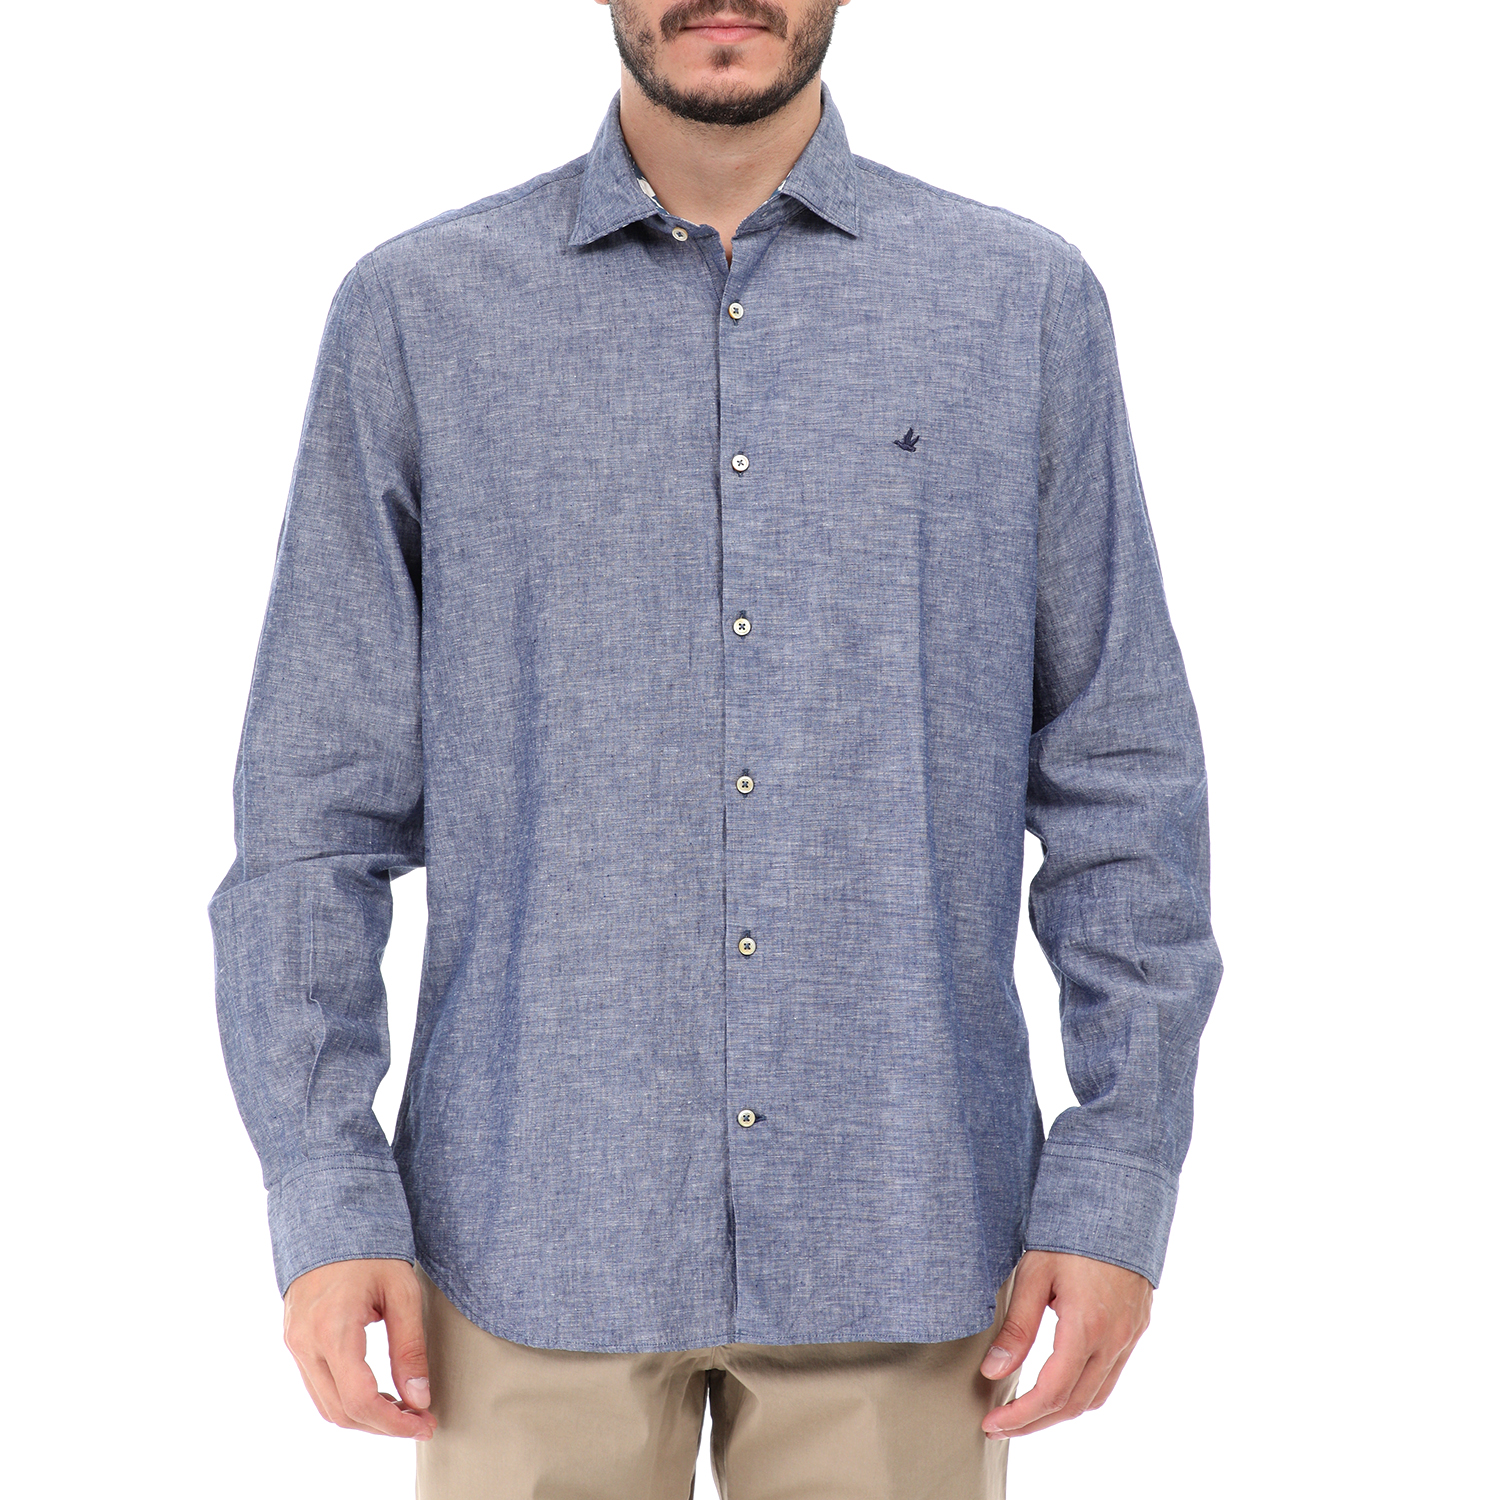 Ανδρικά/Ρούχα/Πουκάμισα/Μακρυμάνικα BROOKSFIELD - Ανδρικό πουκάμισο BROOKSFIELD μπλε